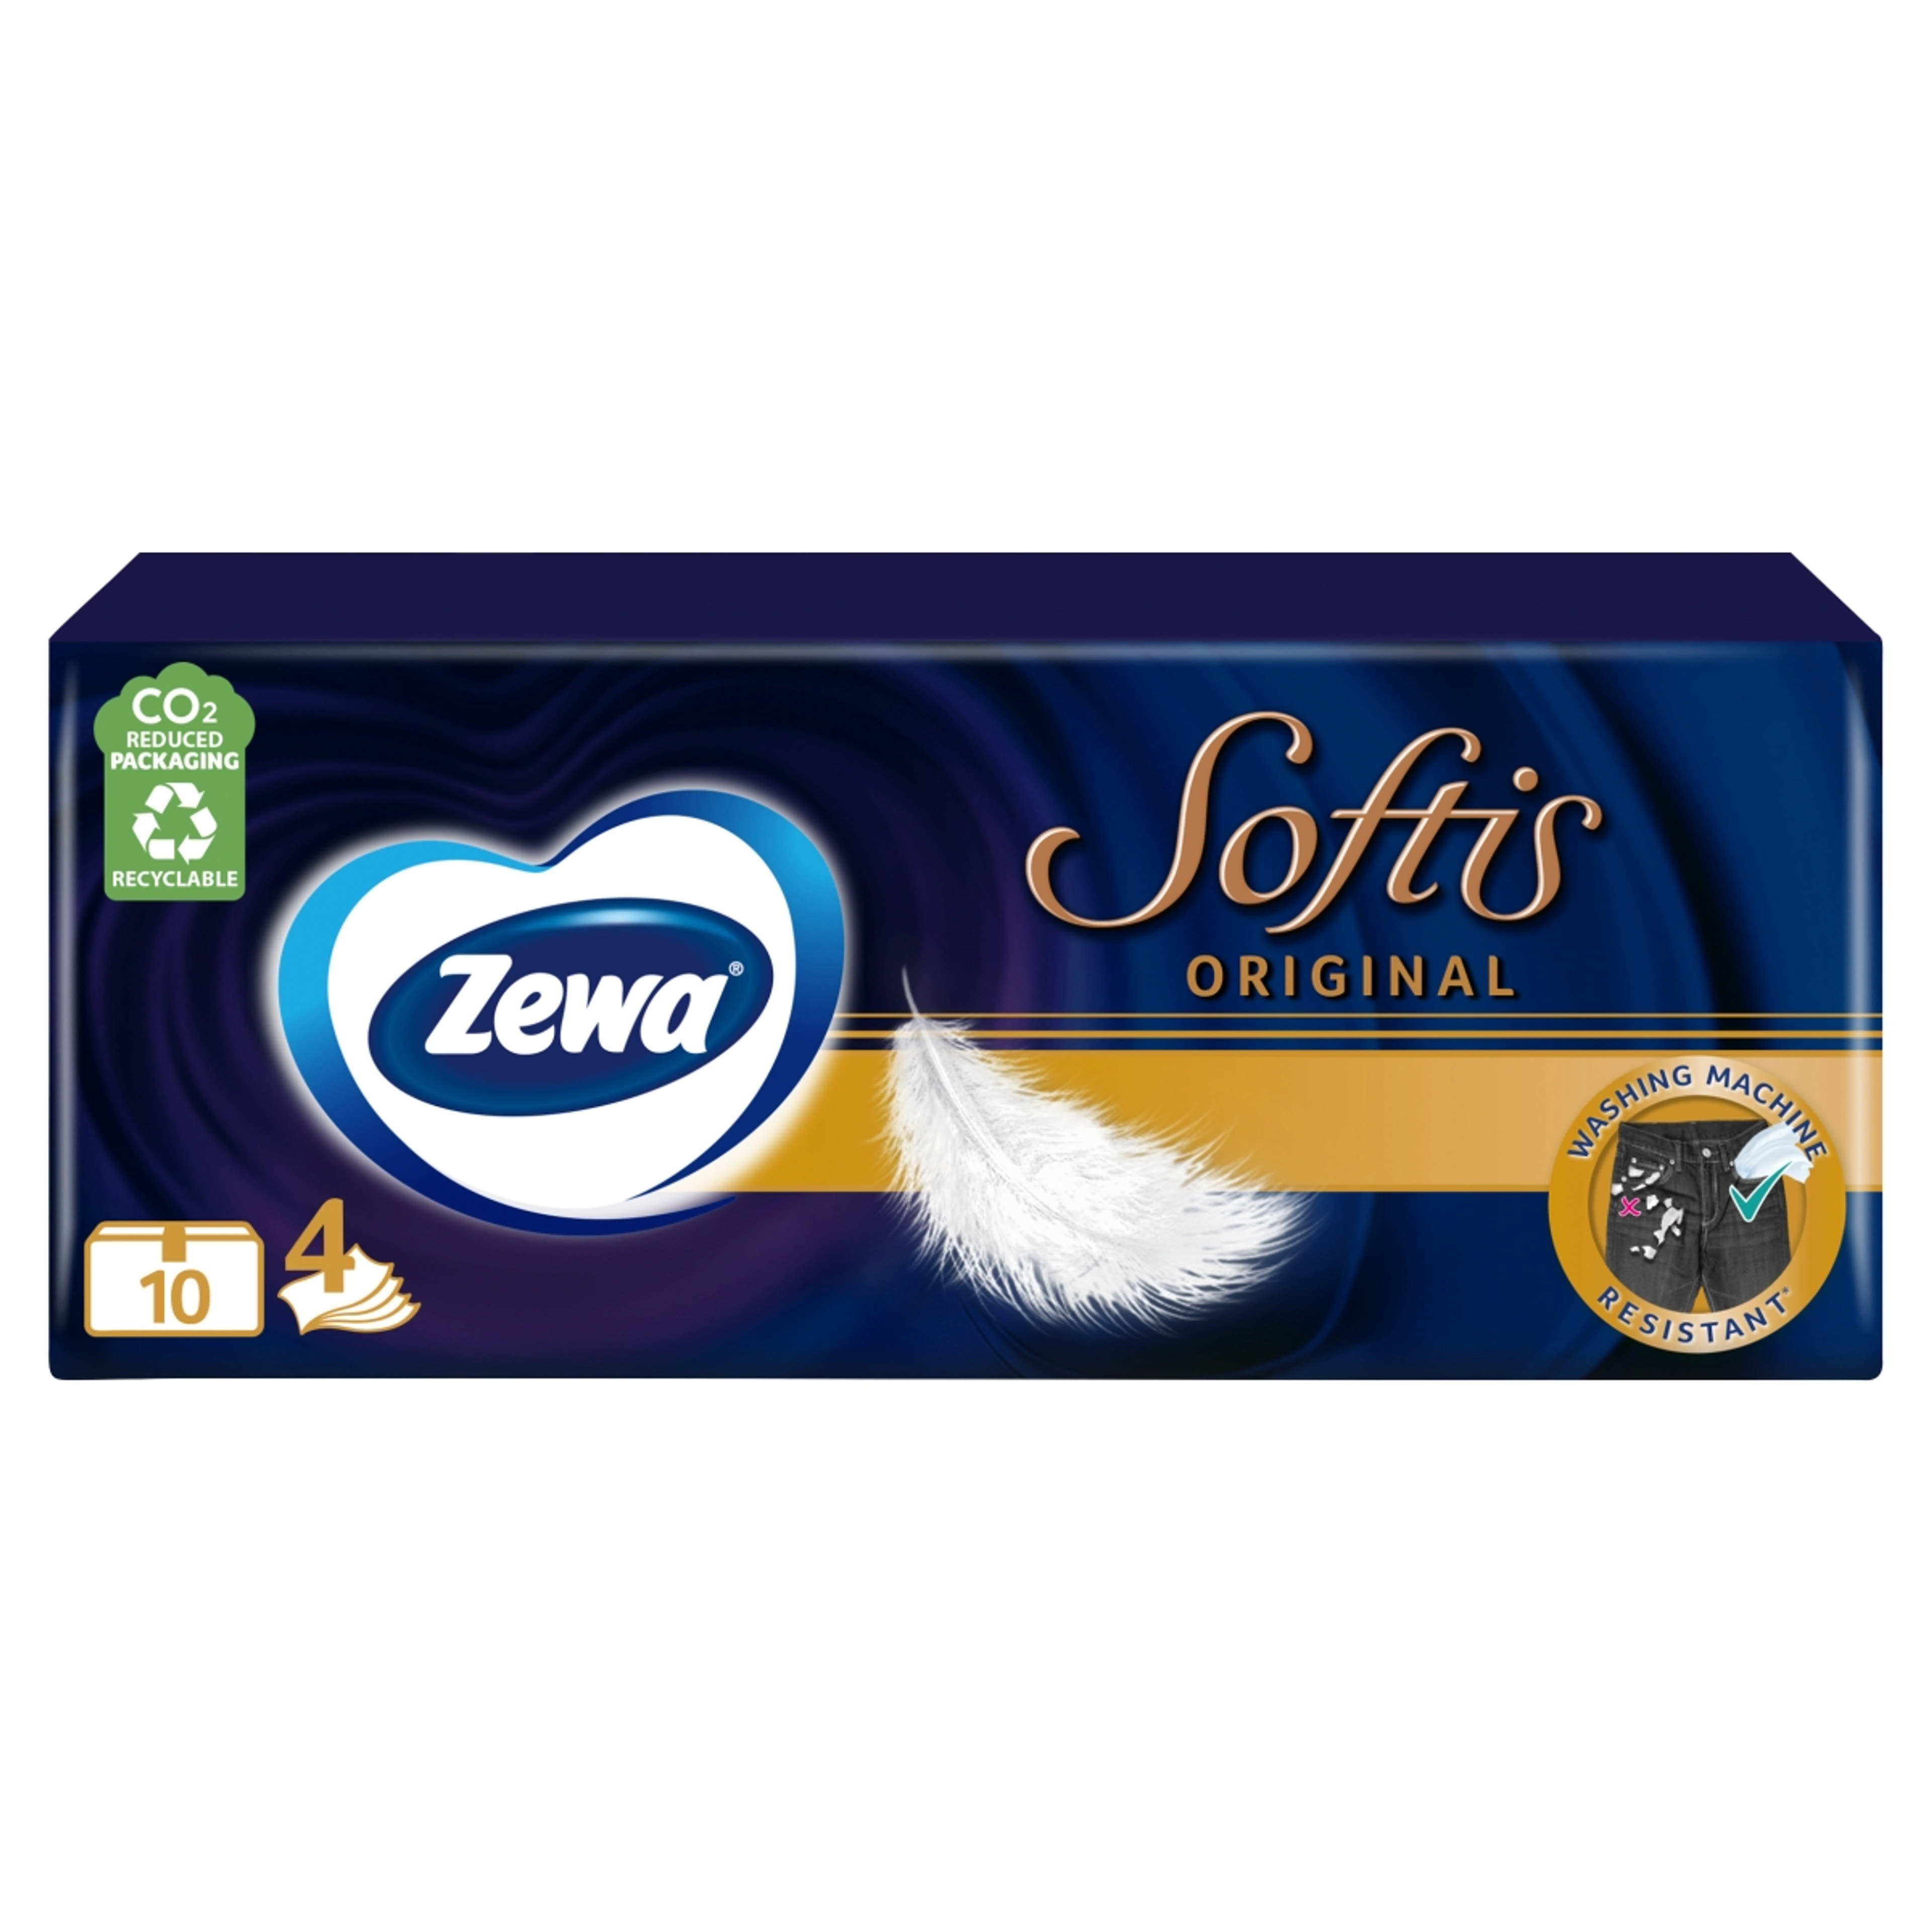 Zewa Softis papírzsebkendő, 3 rétegű 10x9 db - 90 db-5